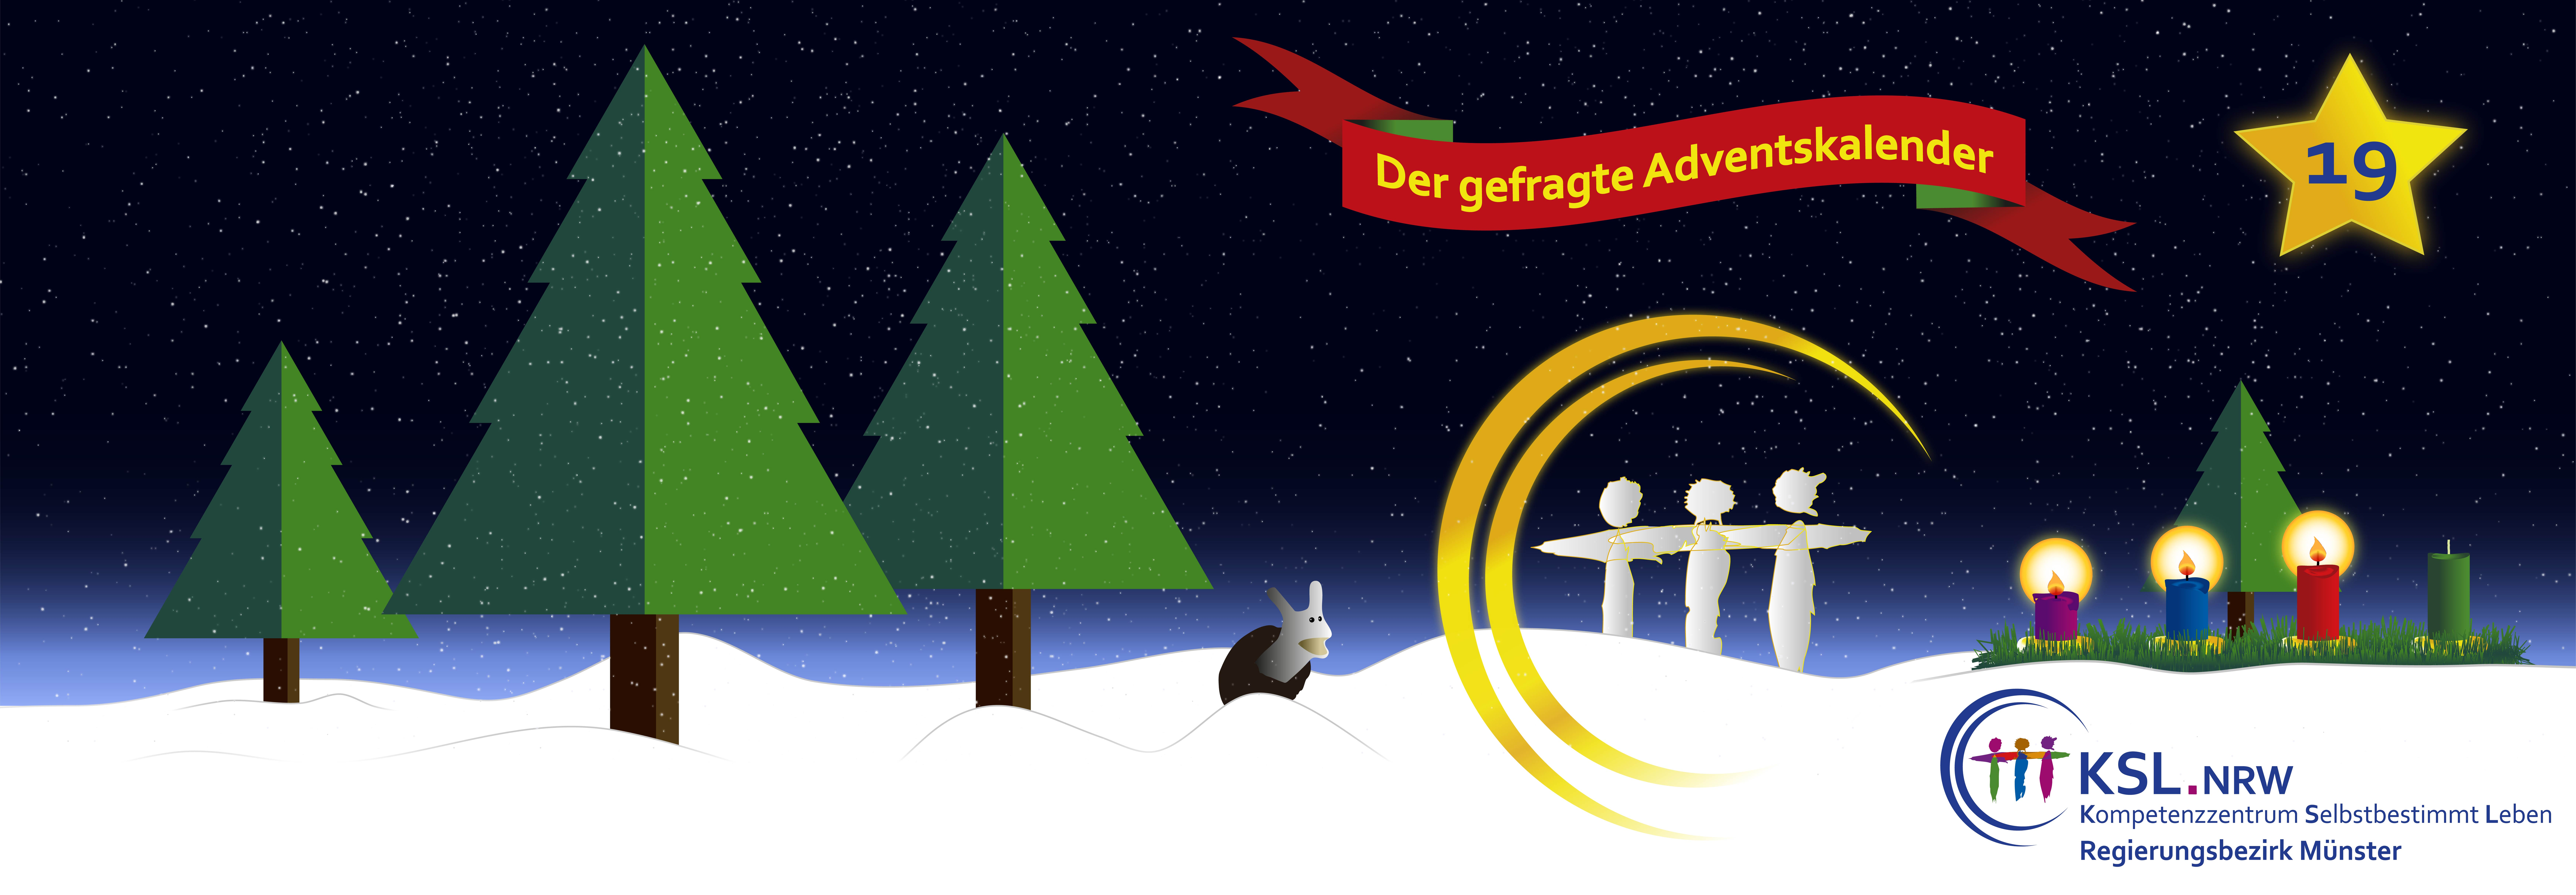 Der gefragte Adventskalender - KSL Münster - weihnachtlicher Hintergrund - vier Tannenbäume - ein Stern mit der Nummer 19 - ein Adventskranz mit vier Kerzen